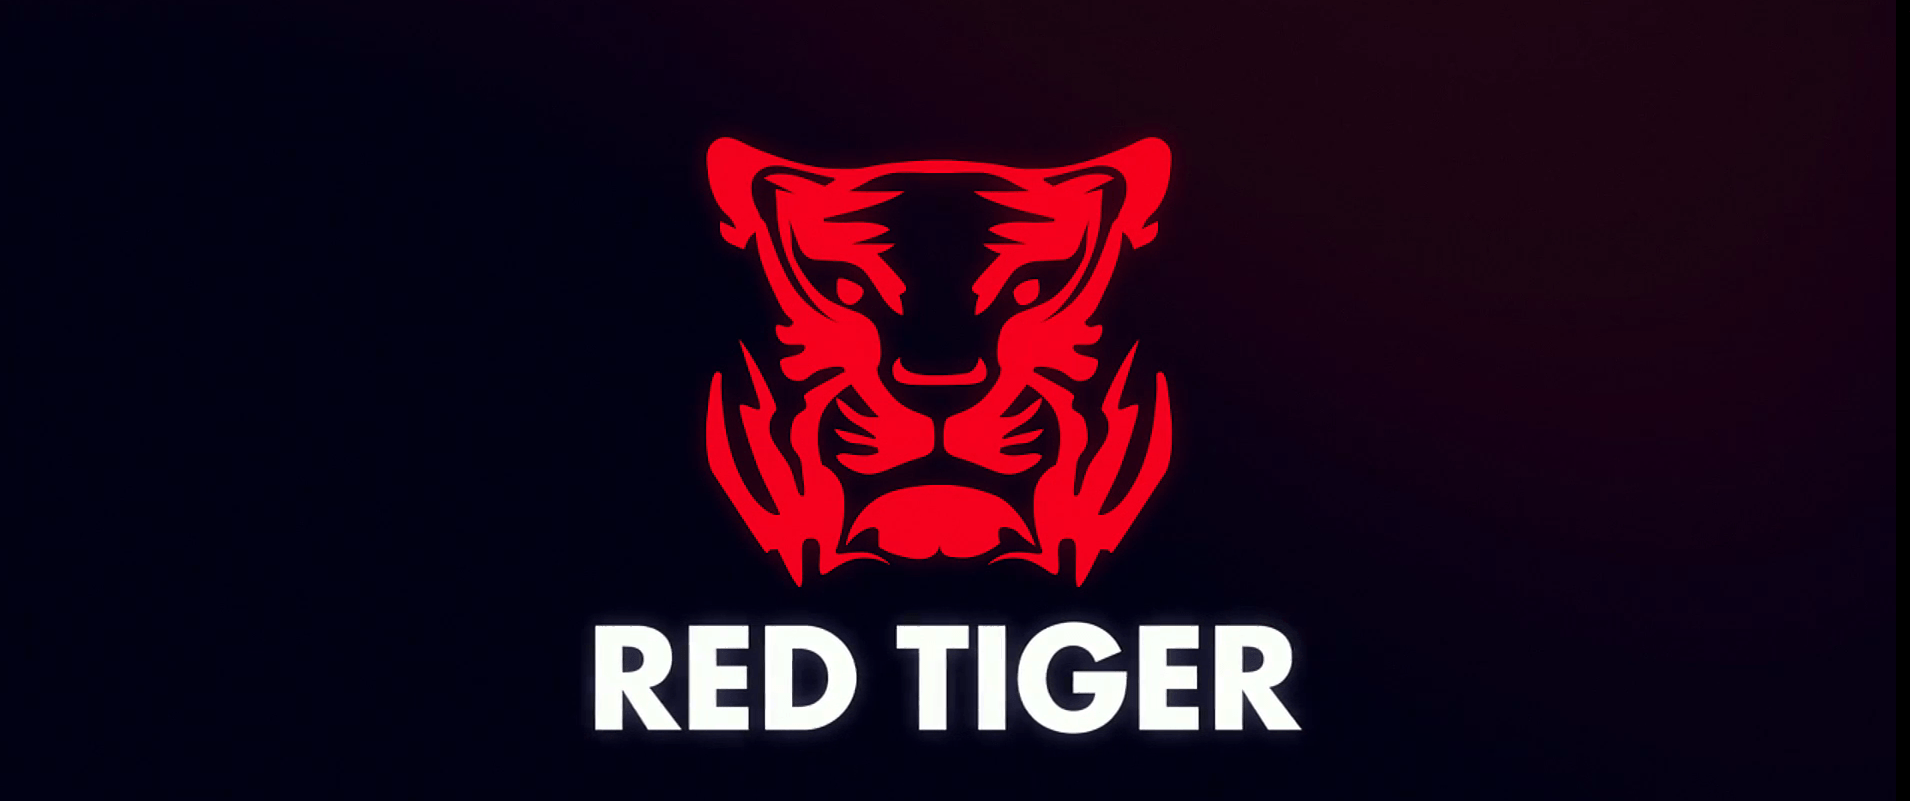 Red Tiger Провайдер игровые автоматы